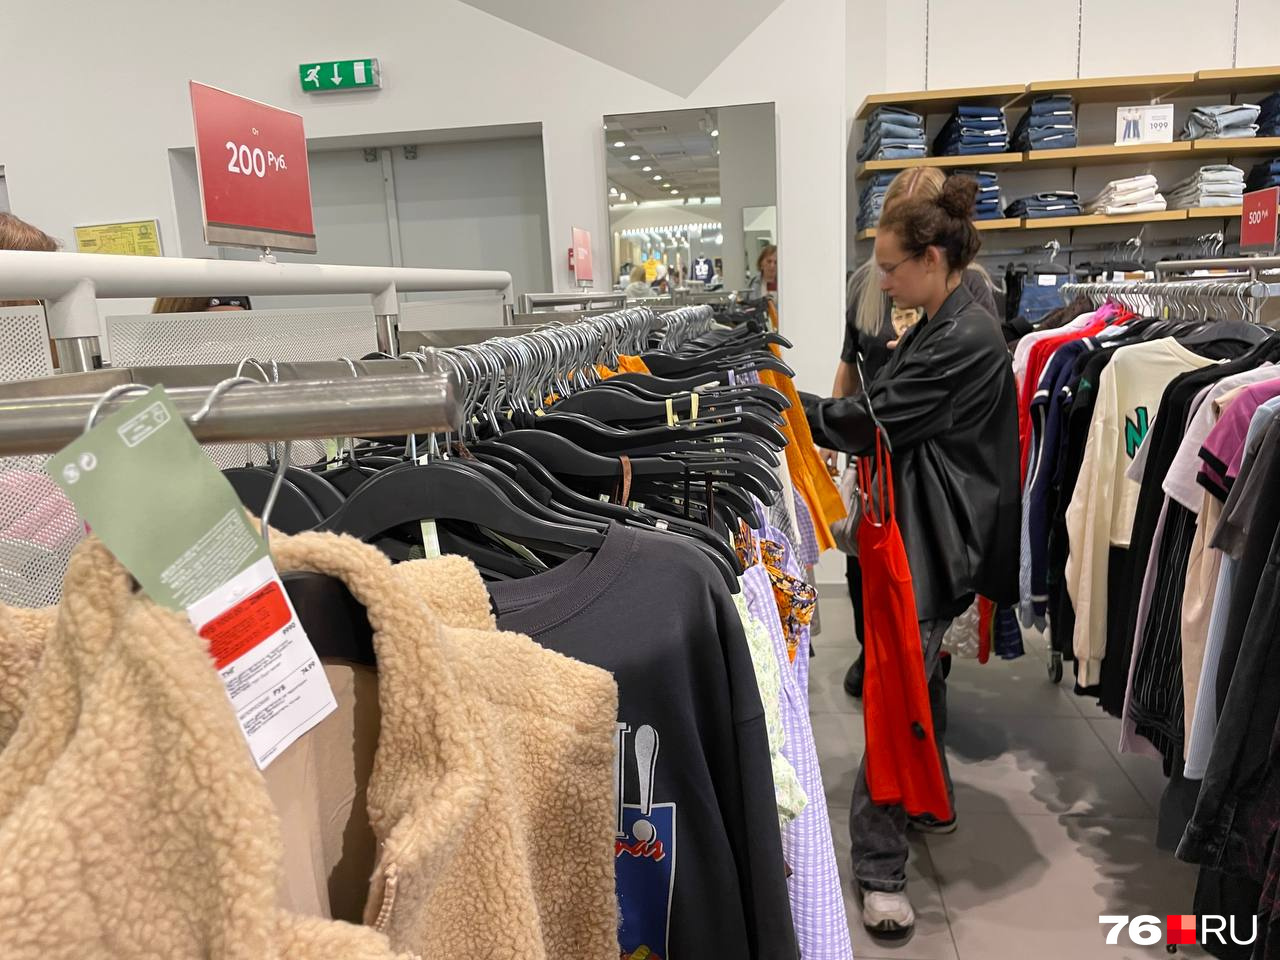 Ярославцы приходят в магазины семьями — чтобы подобрать одежду на всех